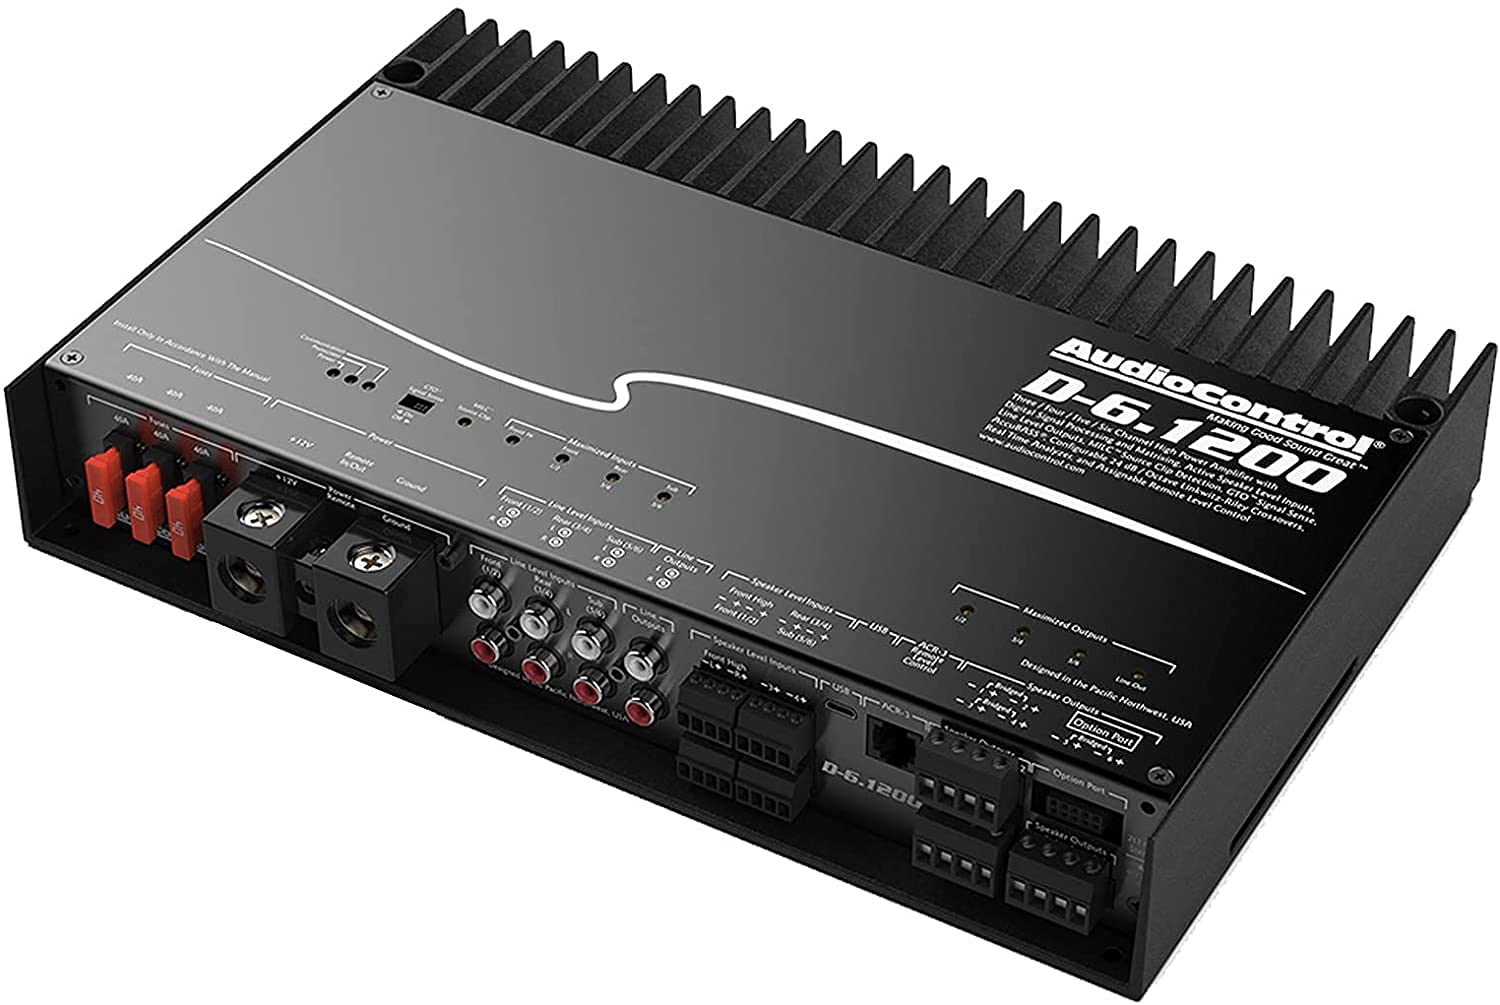 AudioControl D-6.1200 6-Channel DSP Amplifier